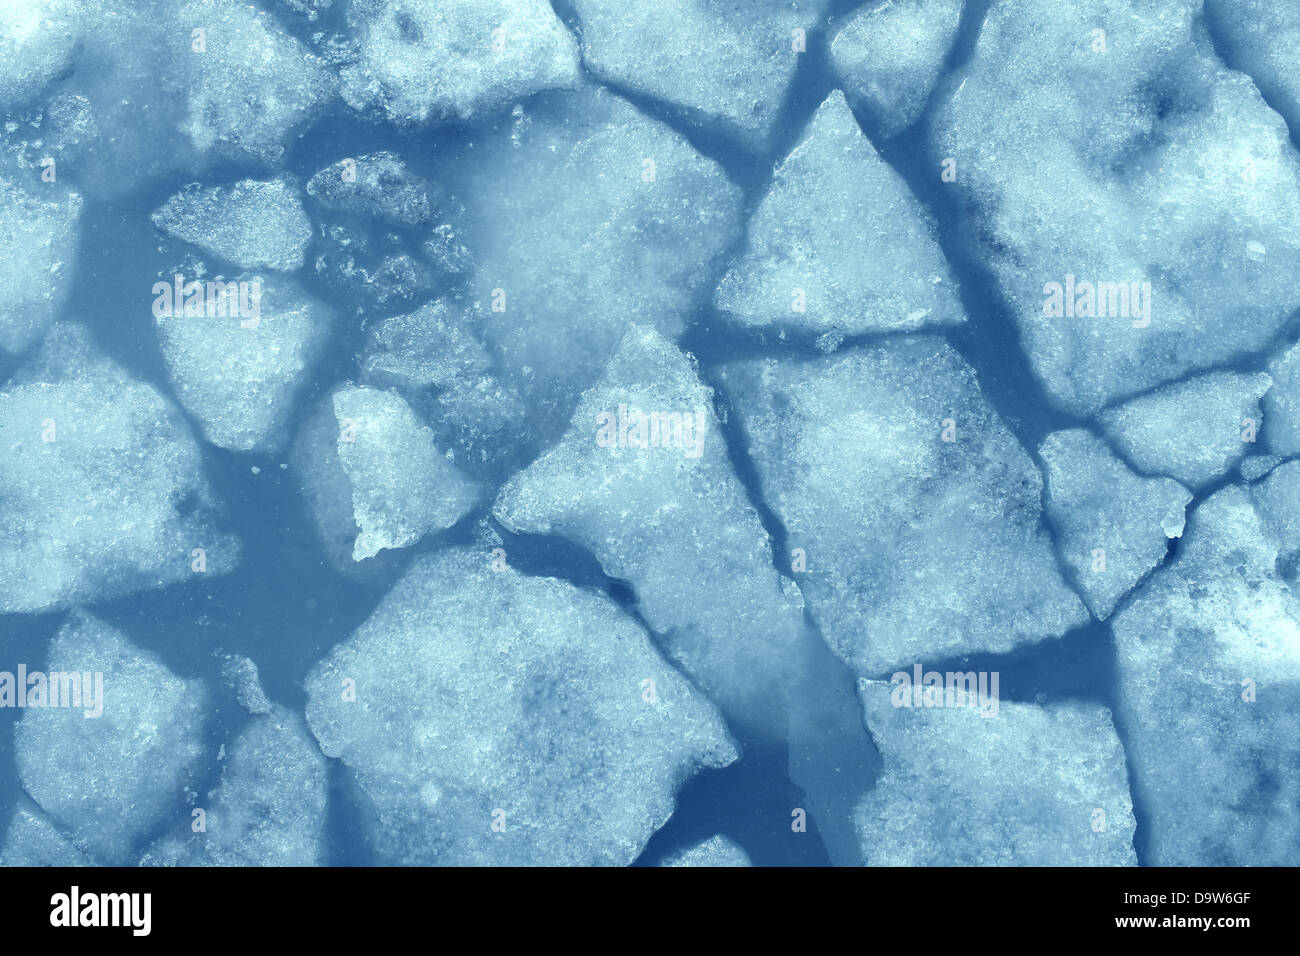 Arrière-plan de la glace brisée comme un concept de froid glacial bleu comme dans le climat polaire de l'Arctique avec des morceaux de glace d'eau au-dessous de zéro représentant milieu réfrigéré cool. Banque D'Images